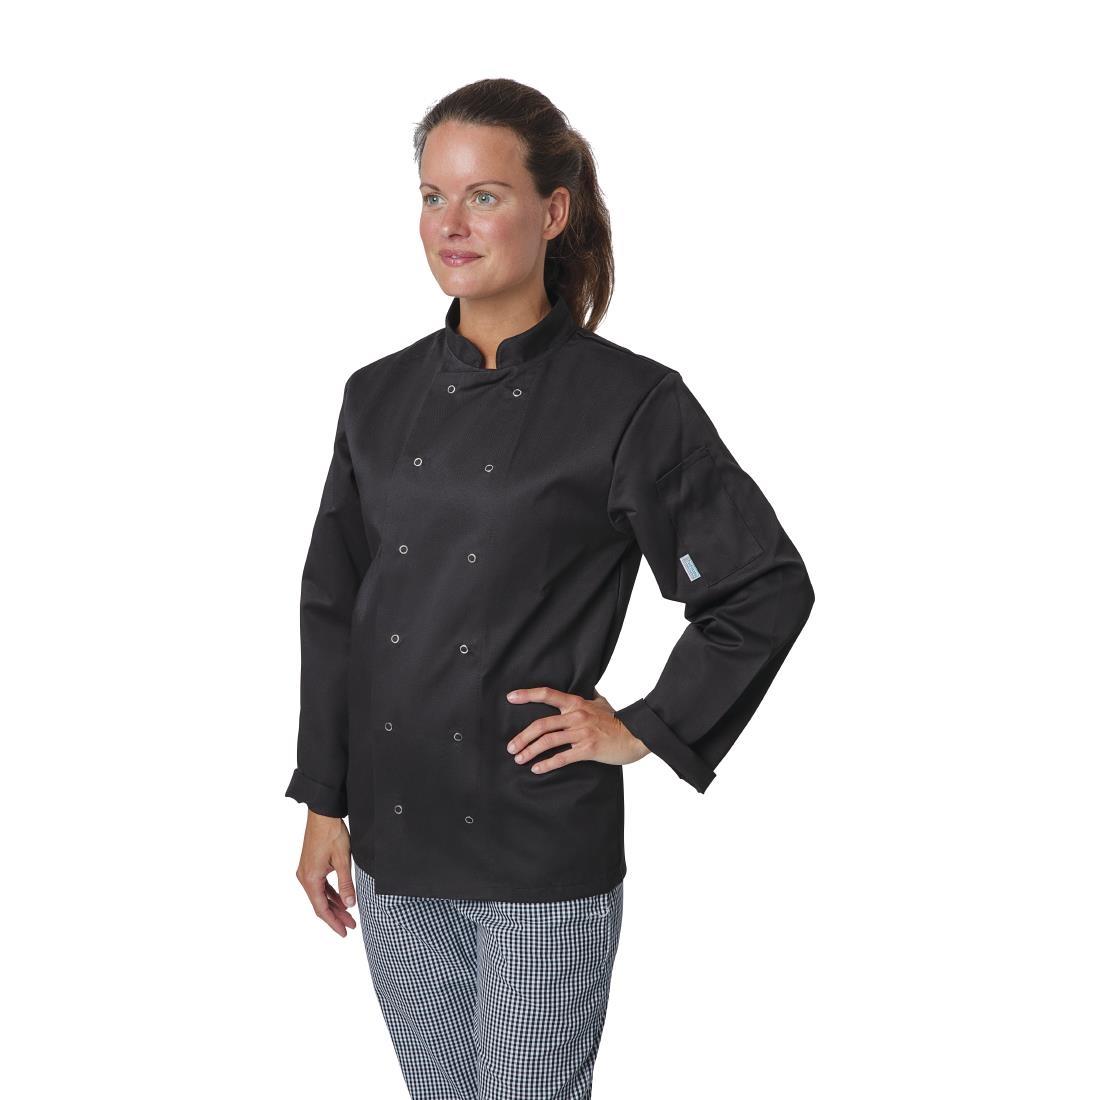 Whites Vegas Unisex Chefs Jacket Long Sleeve Black XL - A438-XL  - 2